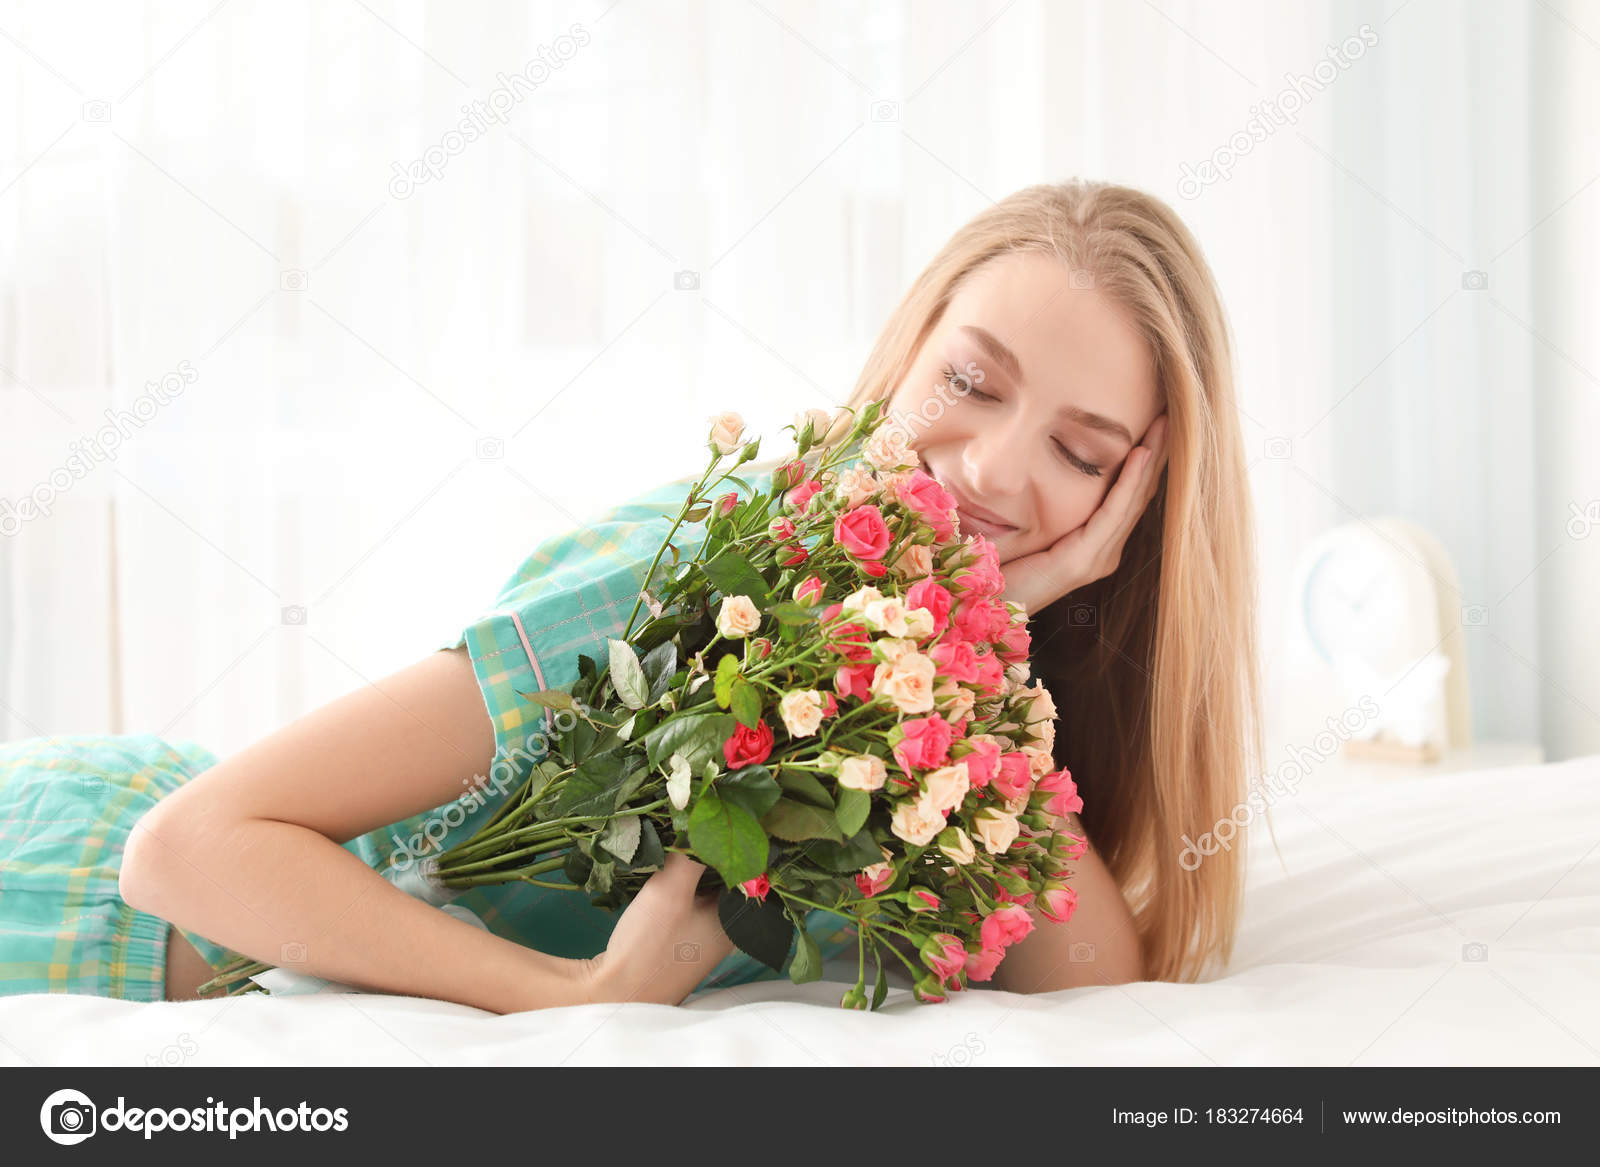 Как лучше подарить цветы девушке: 8 правил, как подарить девушке цветы